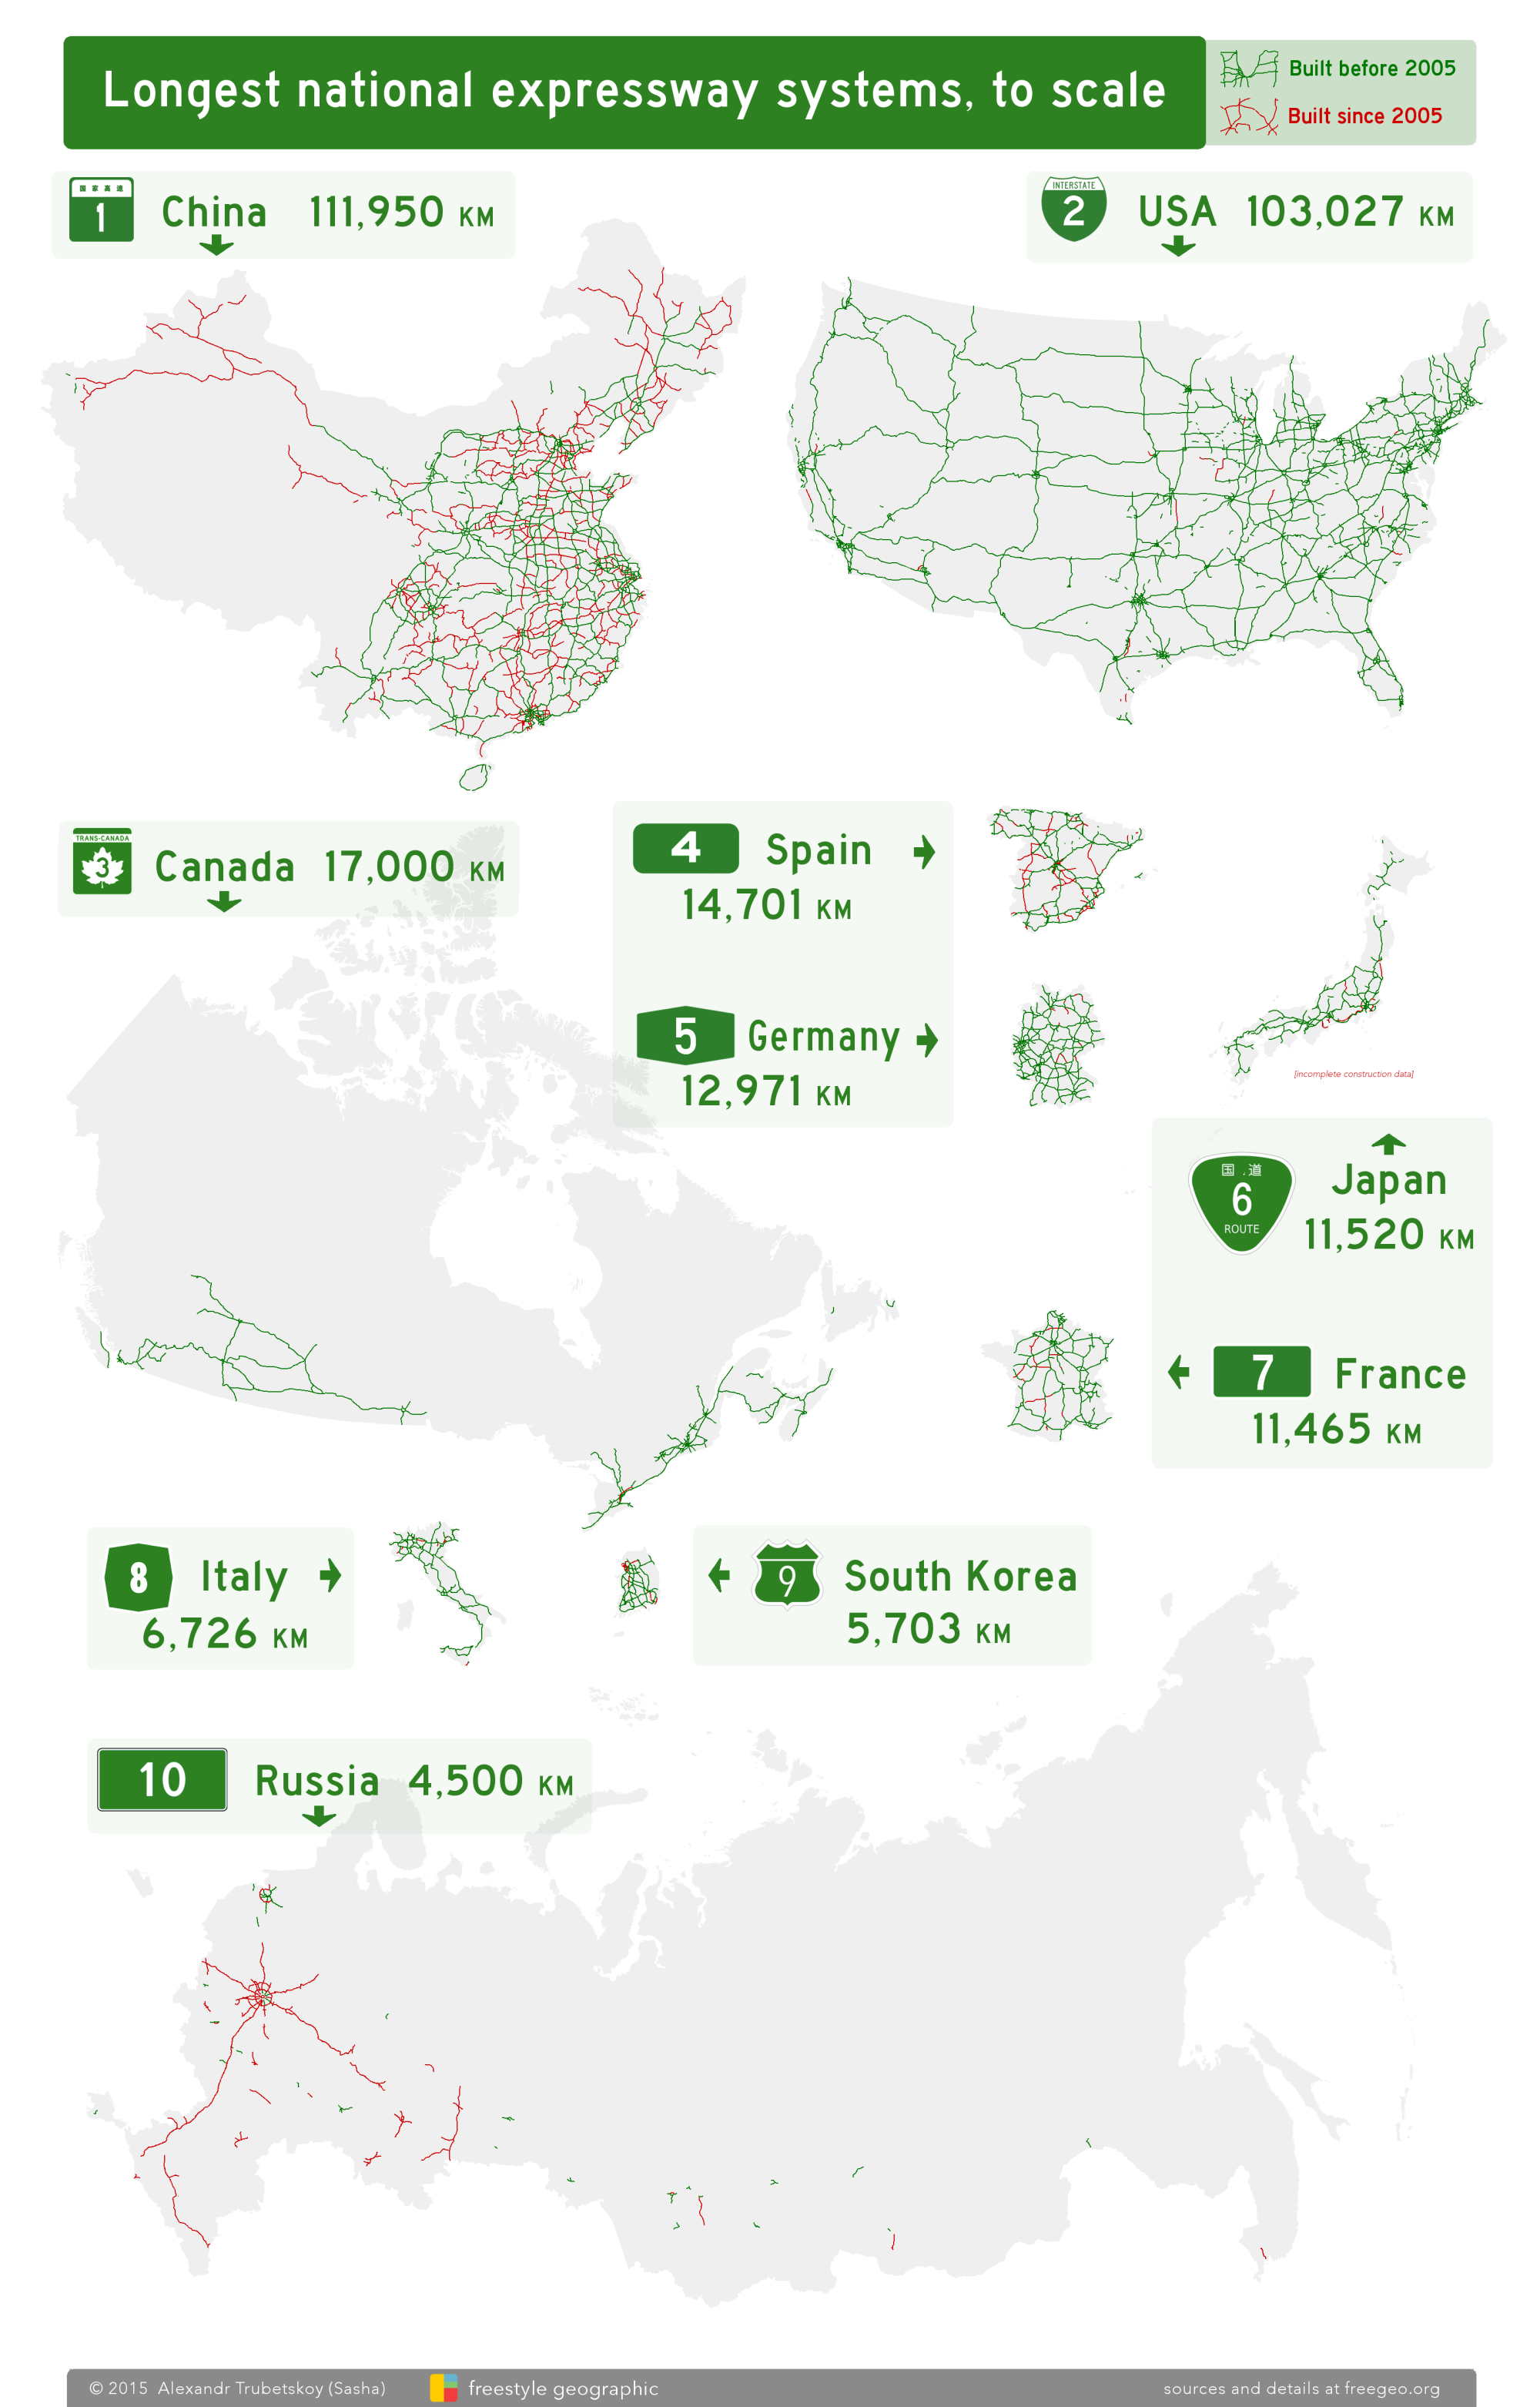 Les 10 plus grands réseaux d’autoroutes à l’échelle